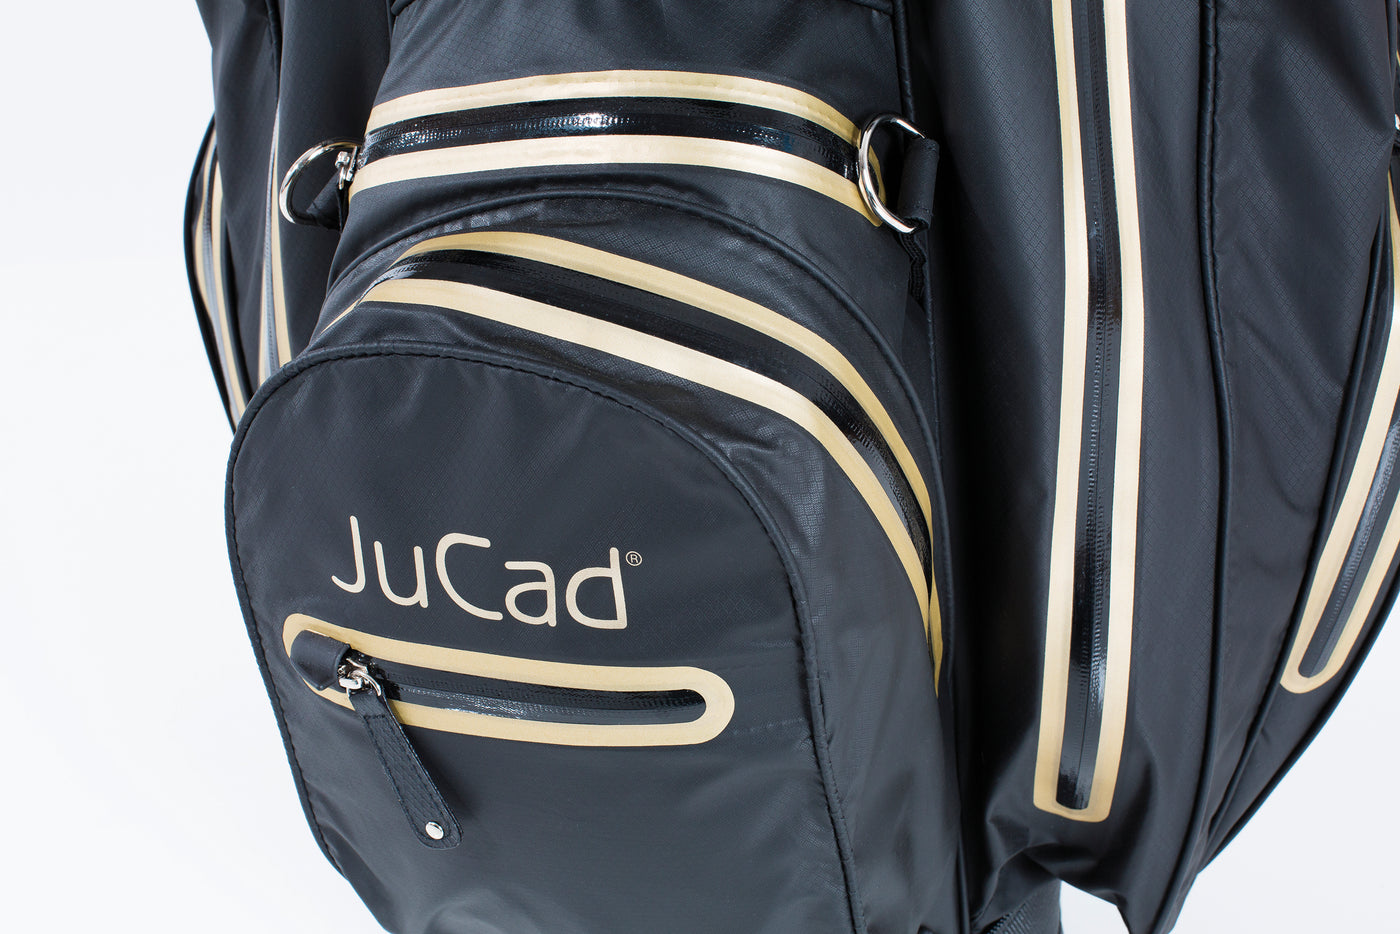 Sac de golf JuCad Aquastop - le léger imperméable